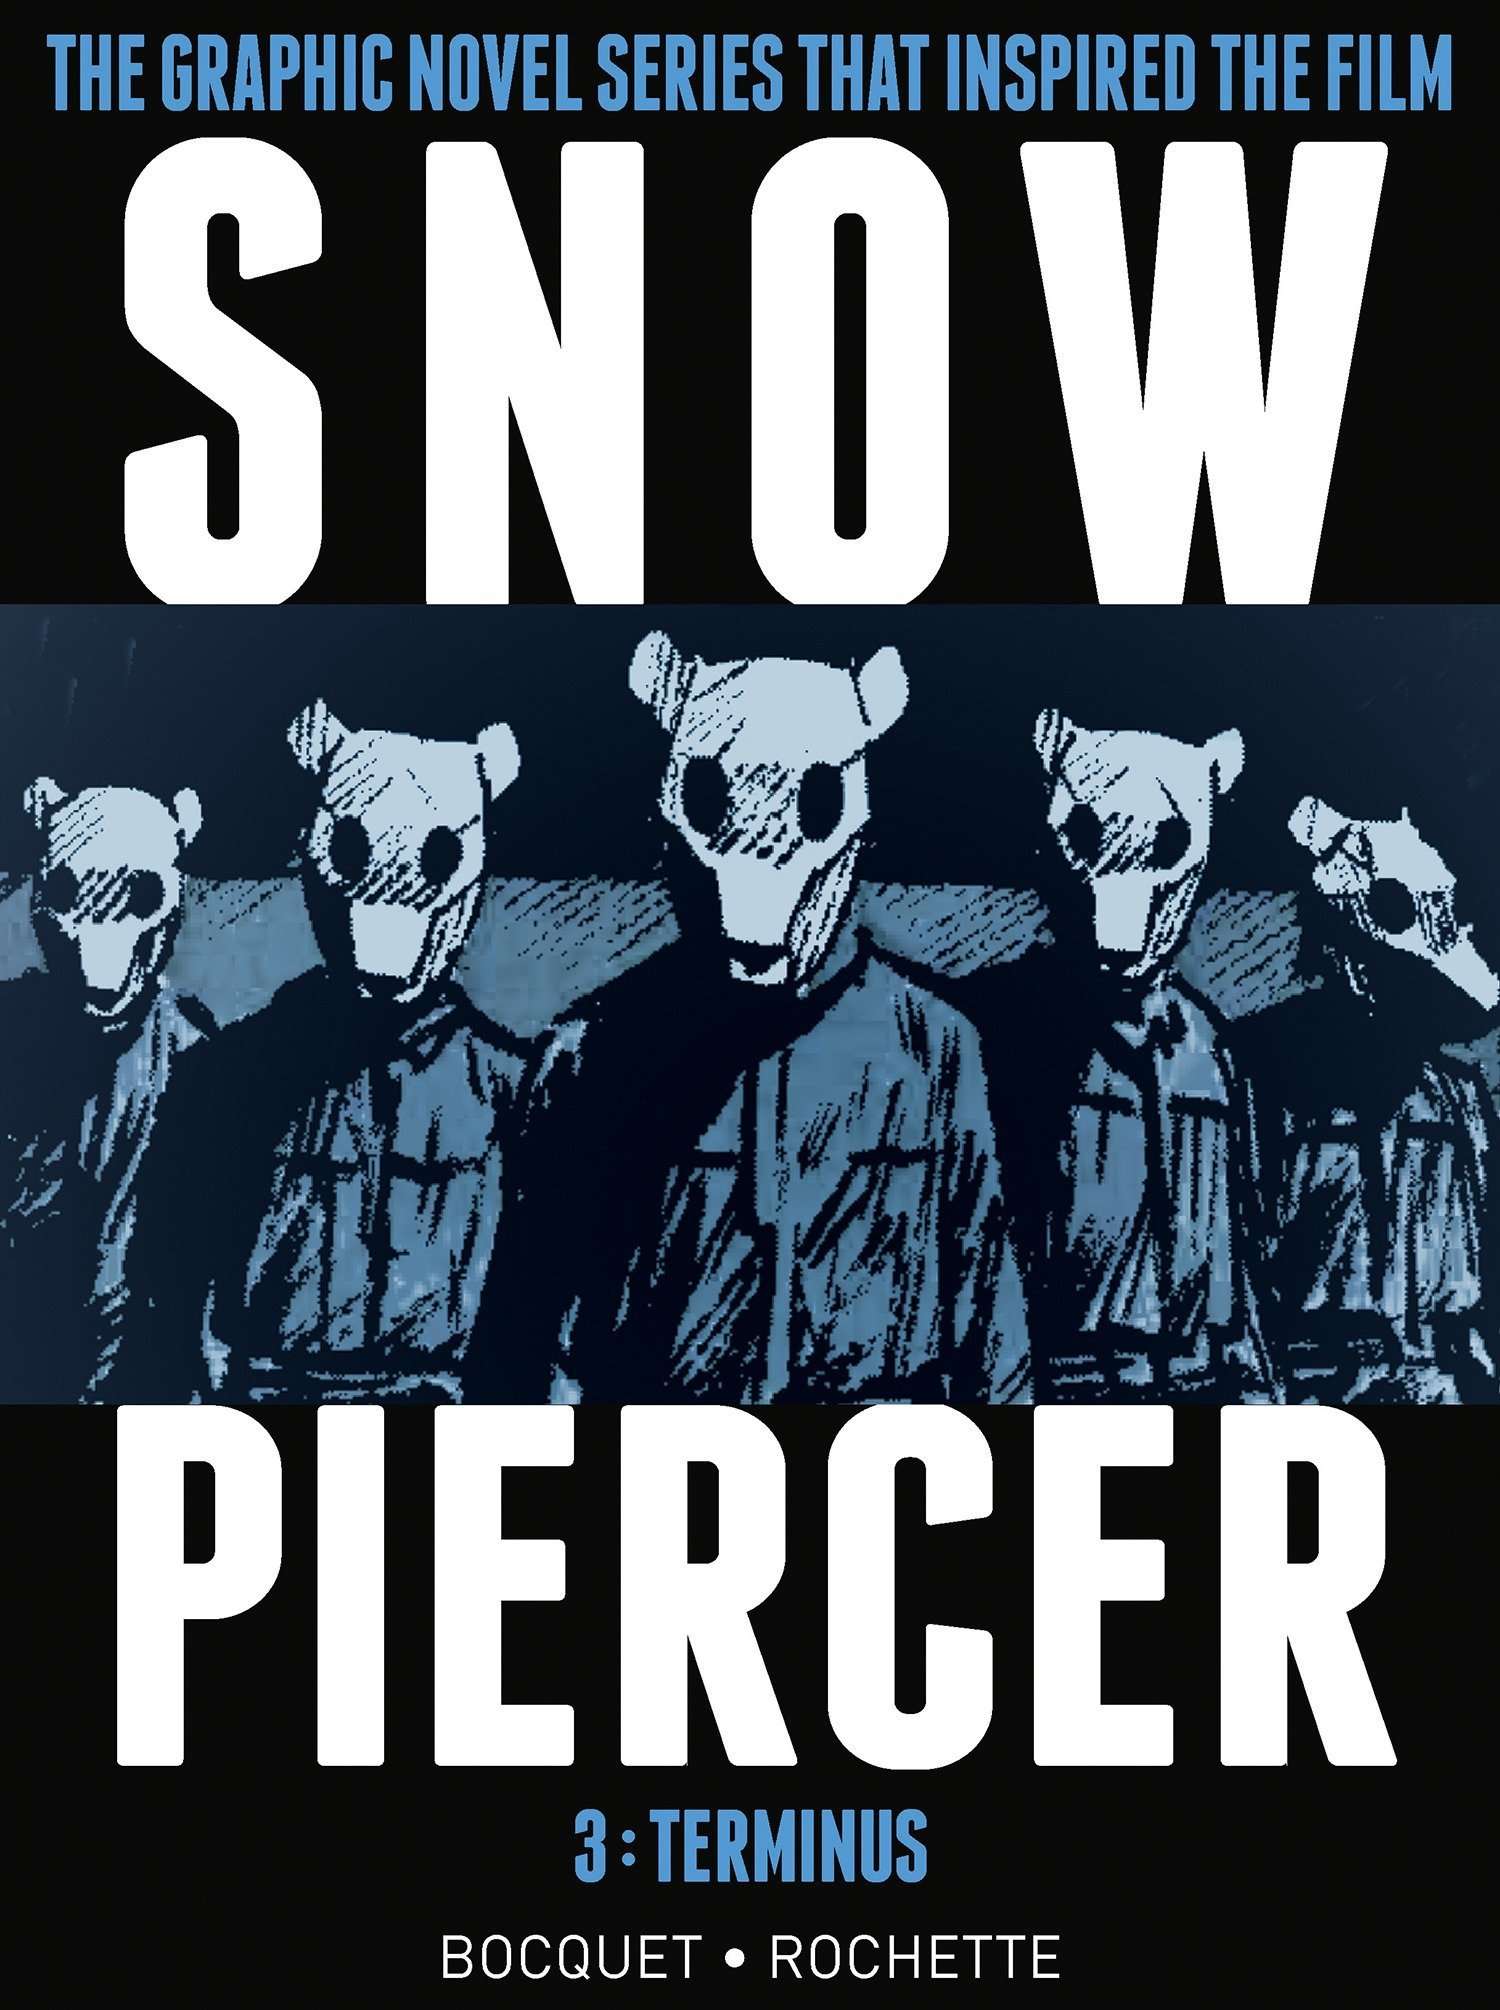 Snowpiercer International Trailer (2013) - Chris Evans Movie HD 